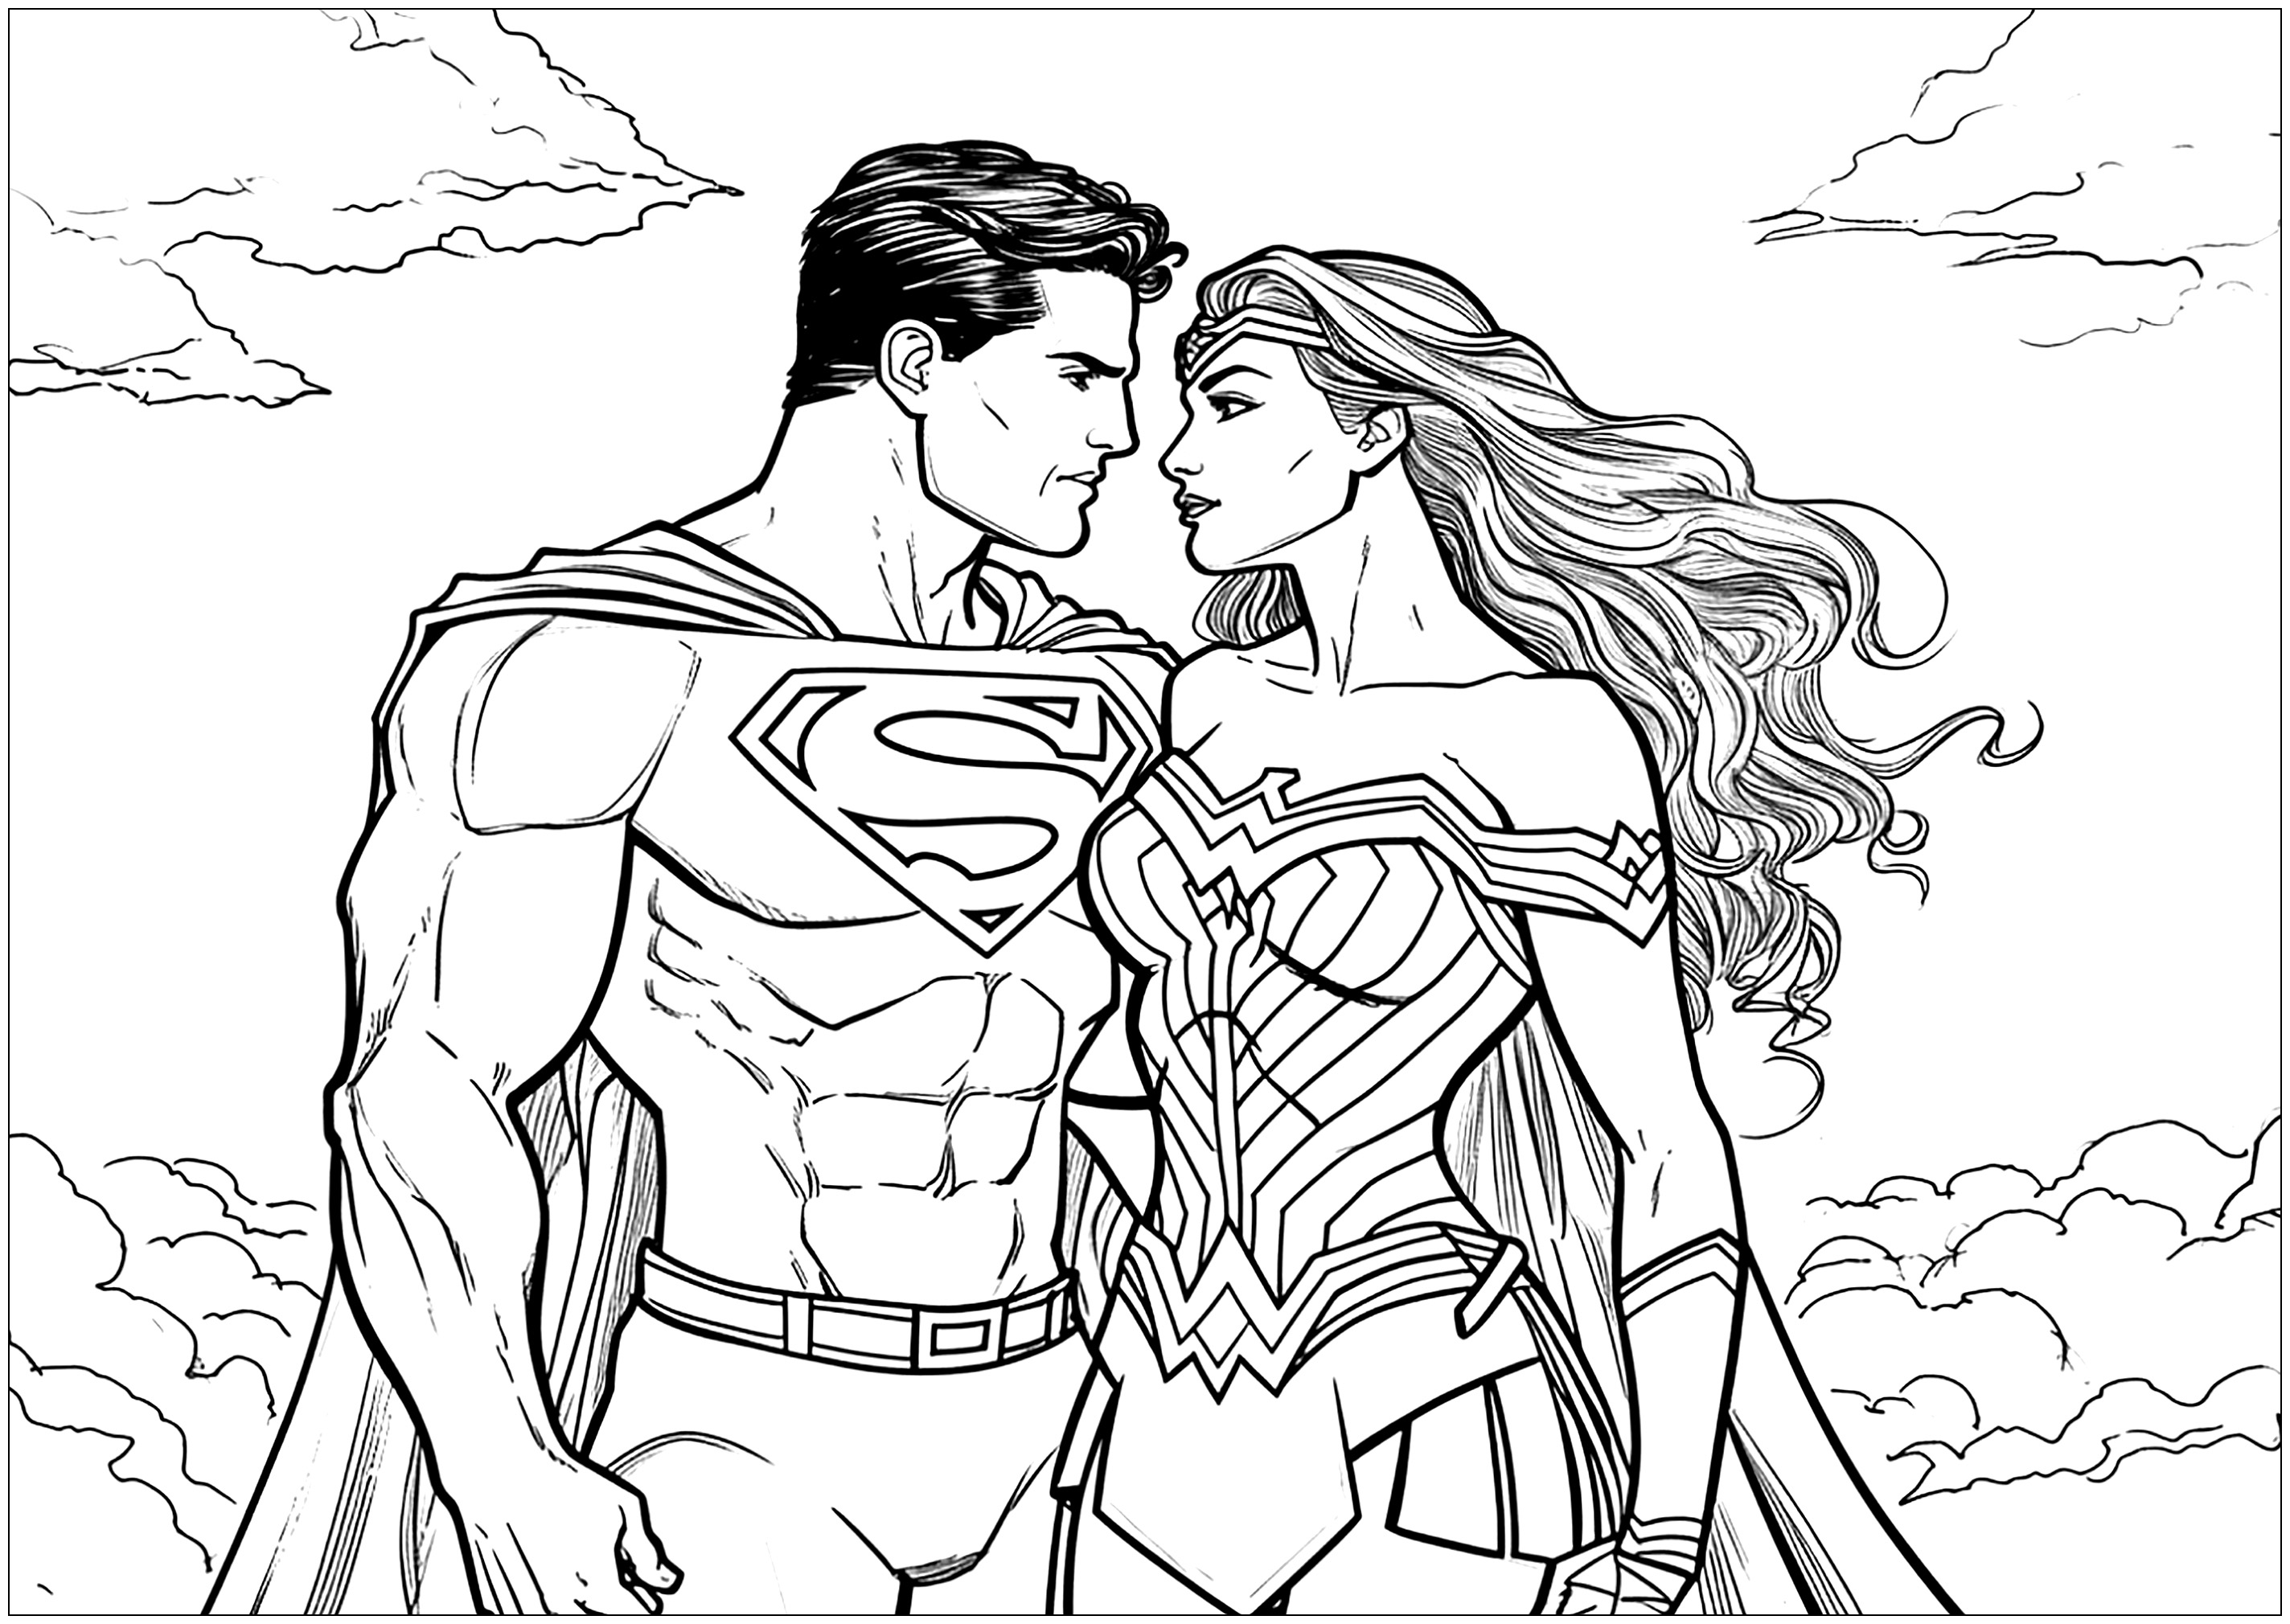 Superman und Wonder Woman in Liebe. Auch Superhelden können sich verlieben... Eine originelle Ausmalvorlage für den Valentinstag!